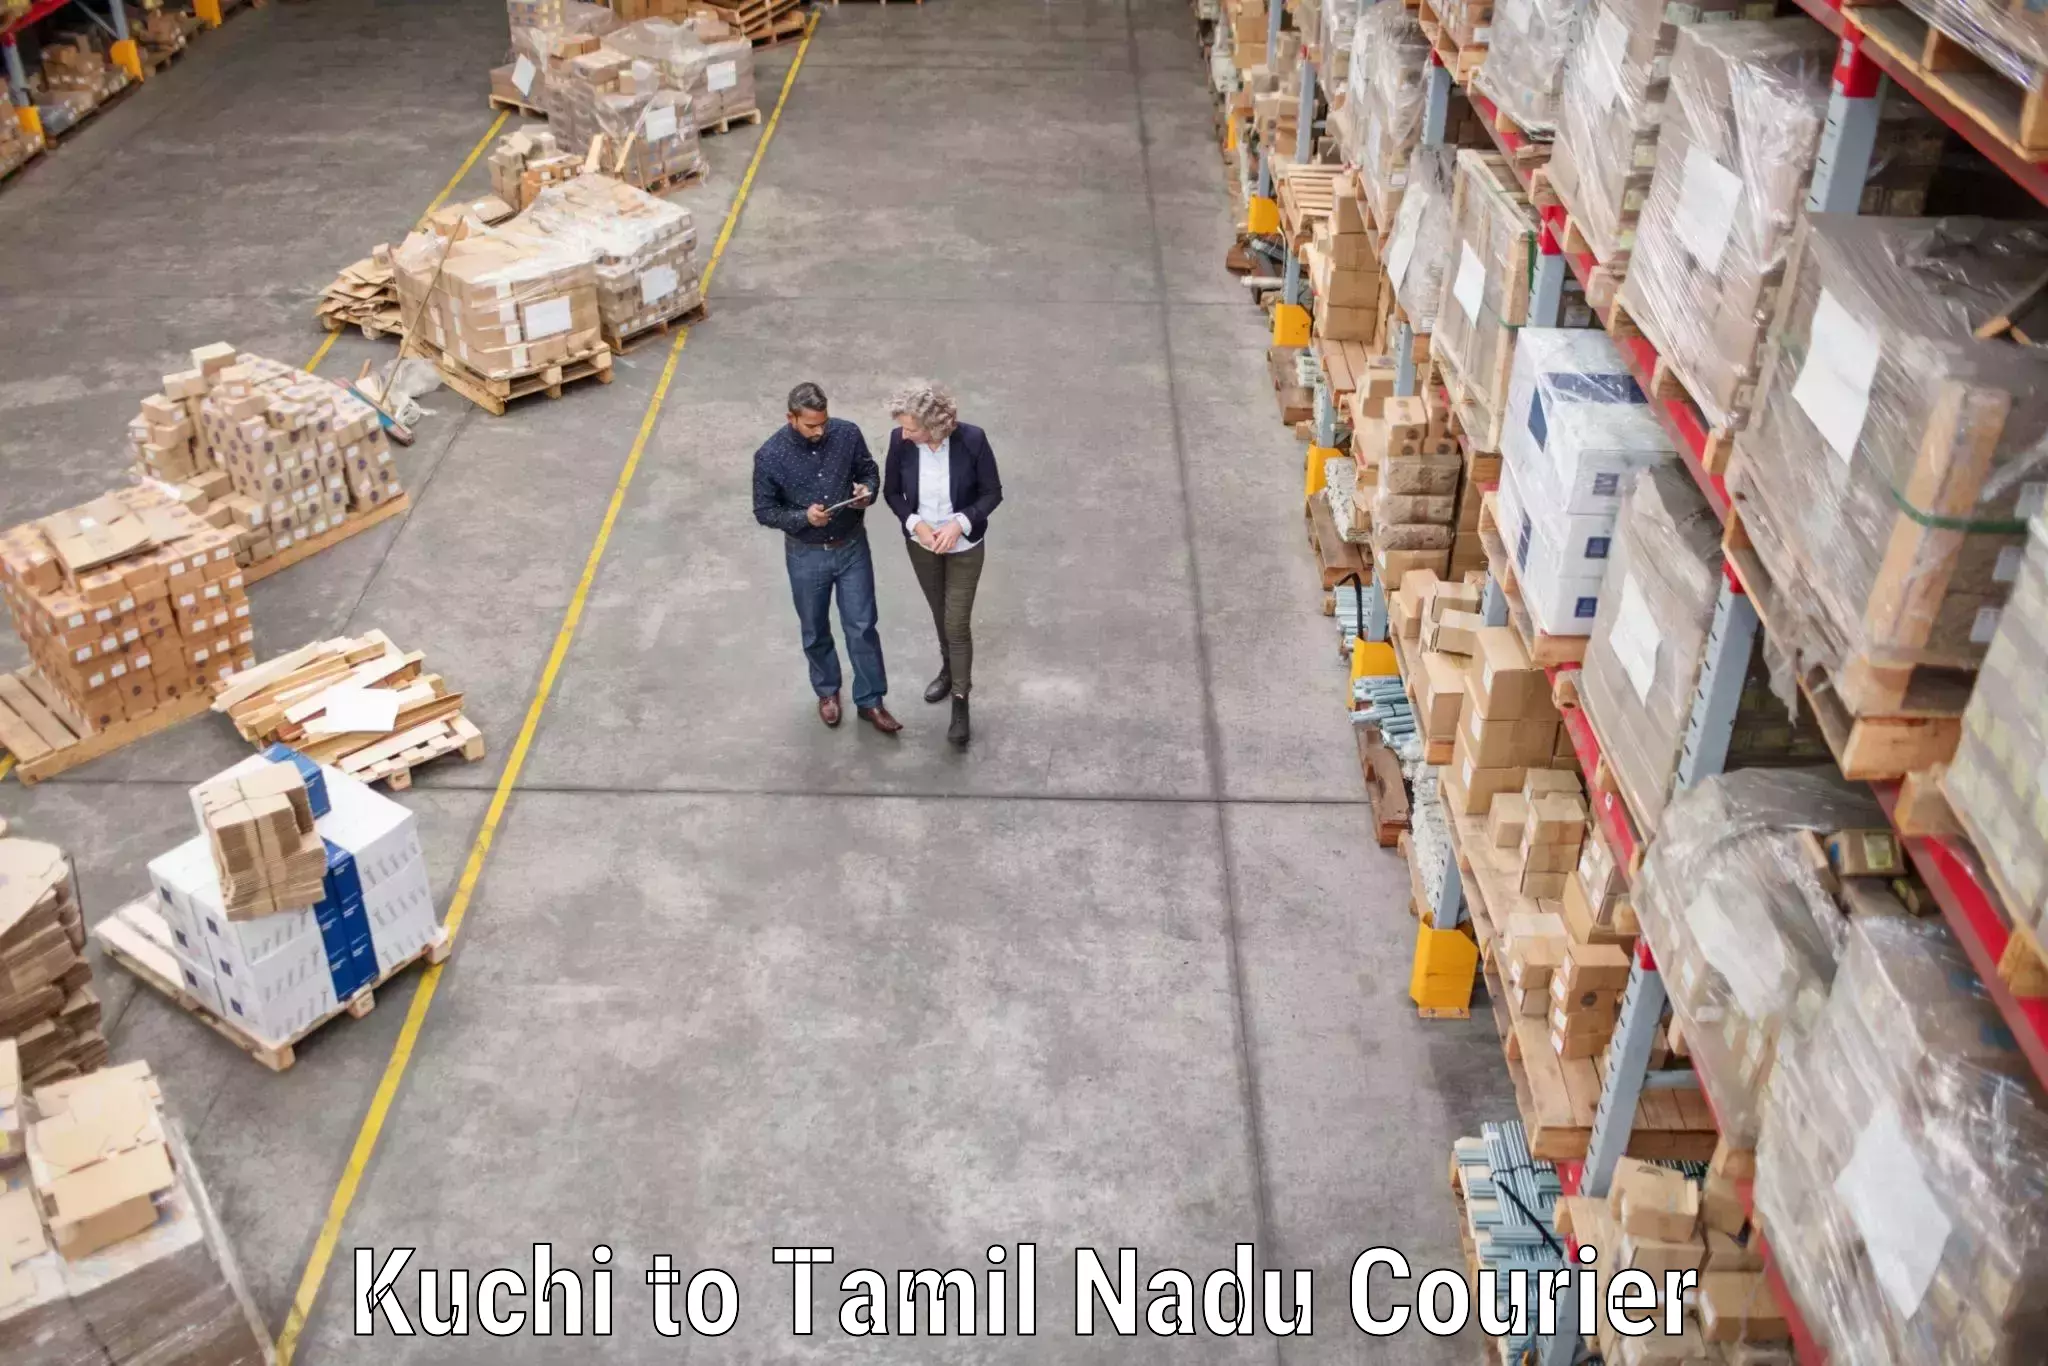 Furniture moving specialists Kuchi to Tamil Nadu